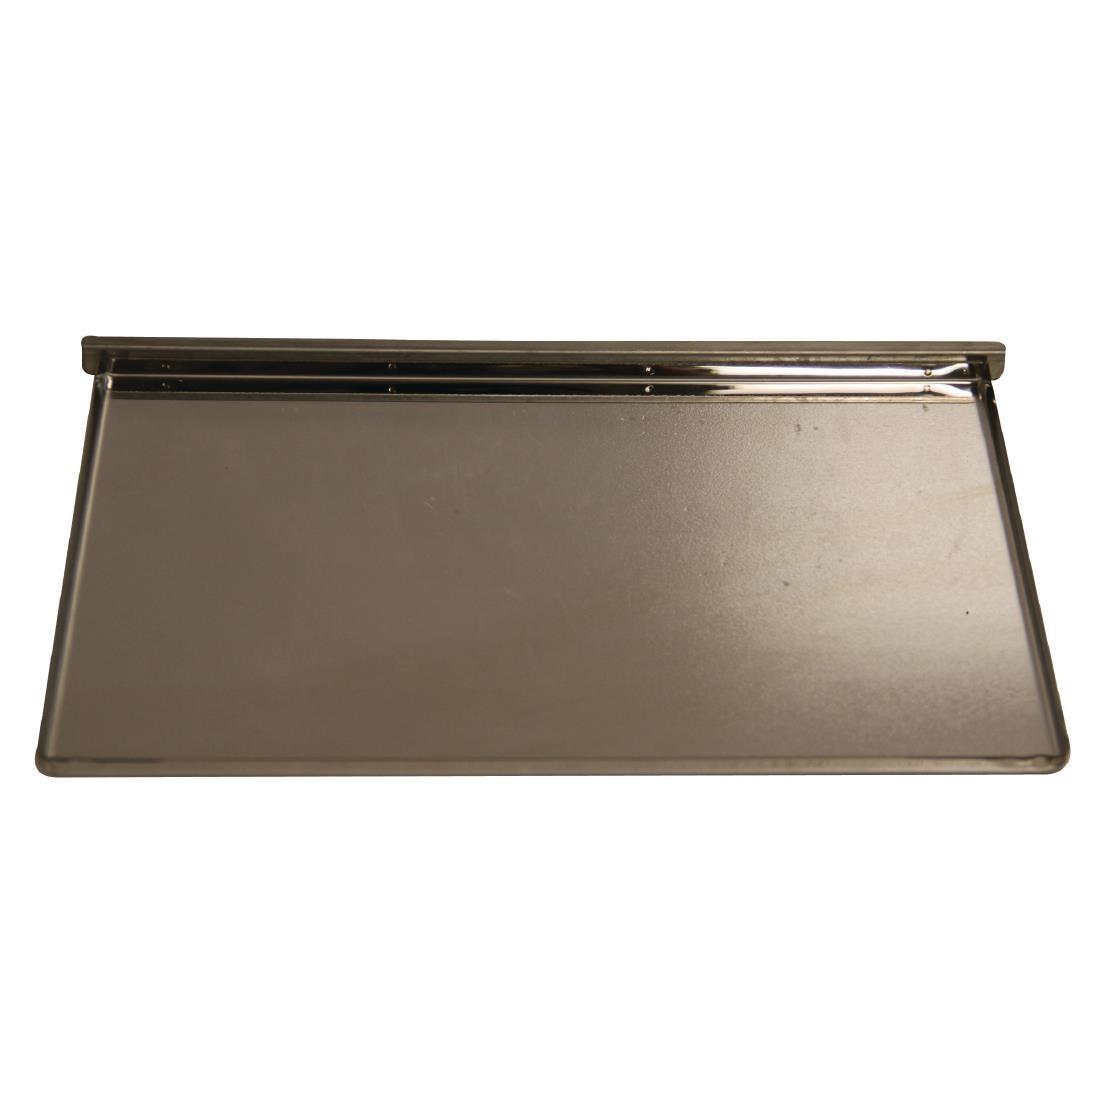 Buffalo Crumb Tray (6 Slot) - AE604  - 1